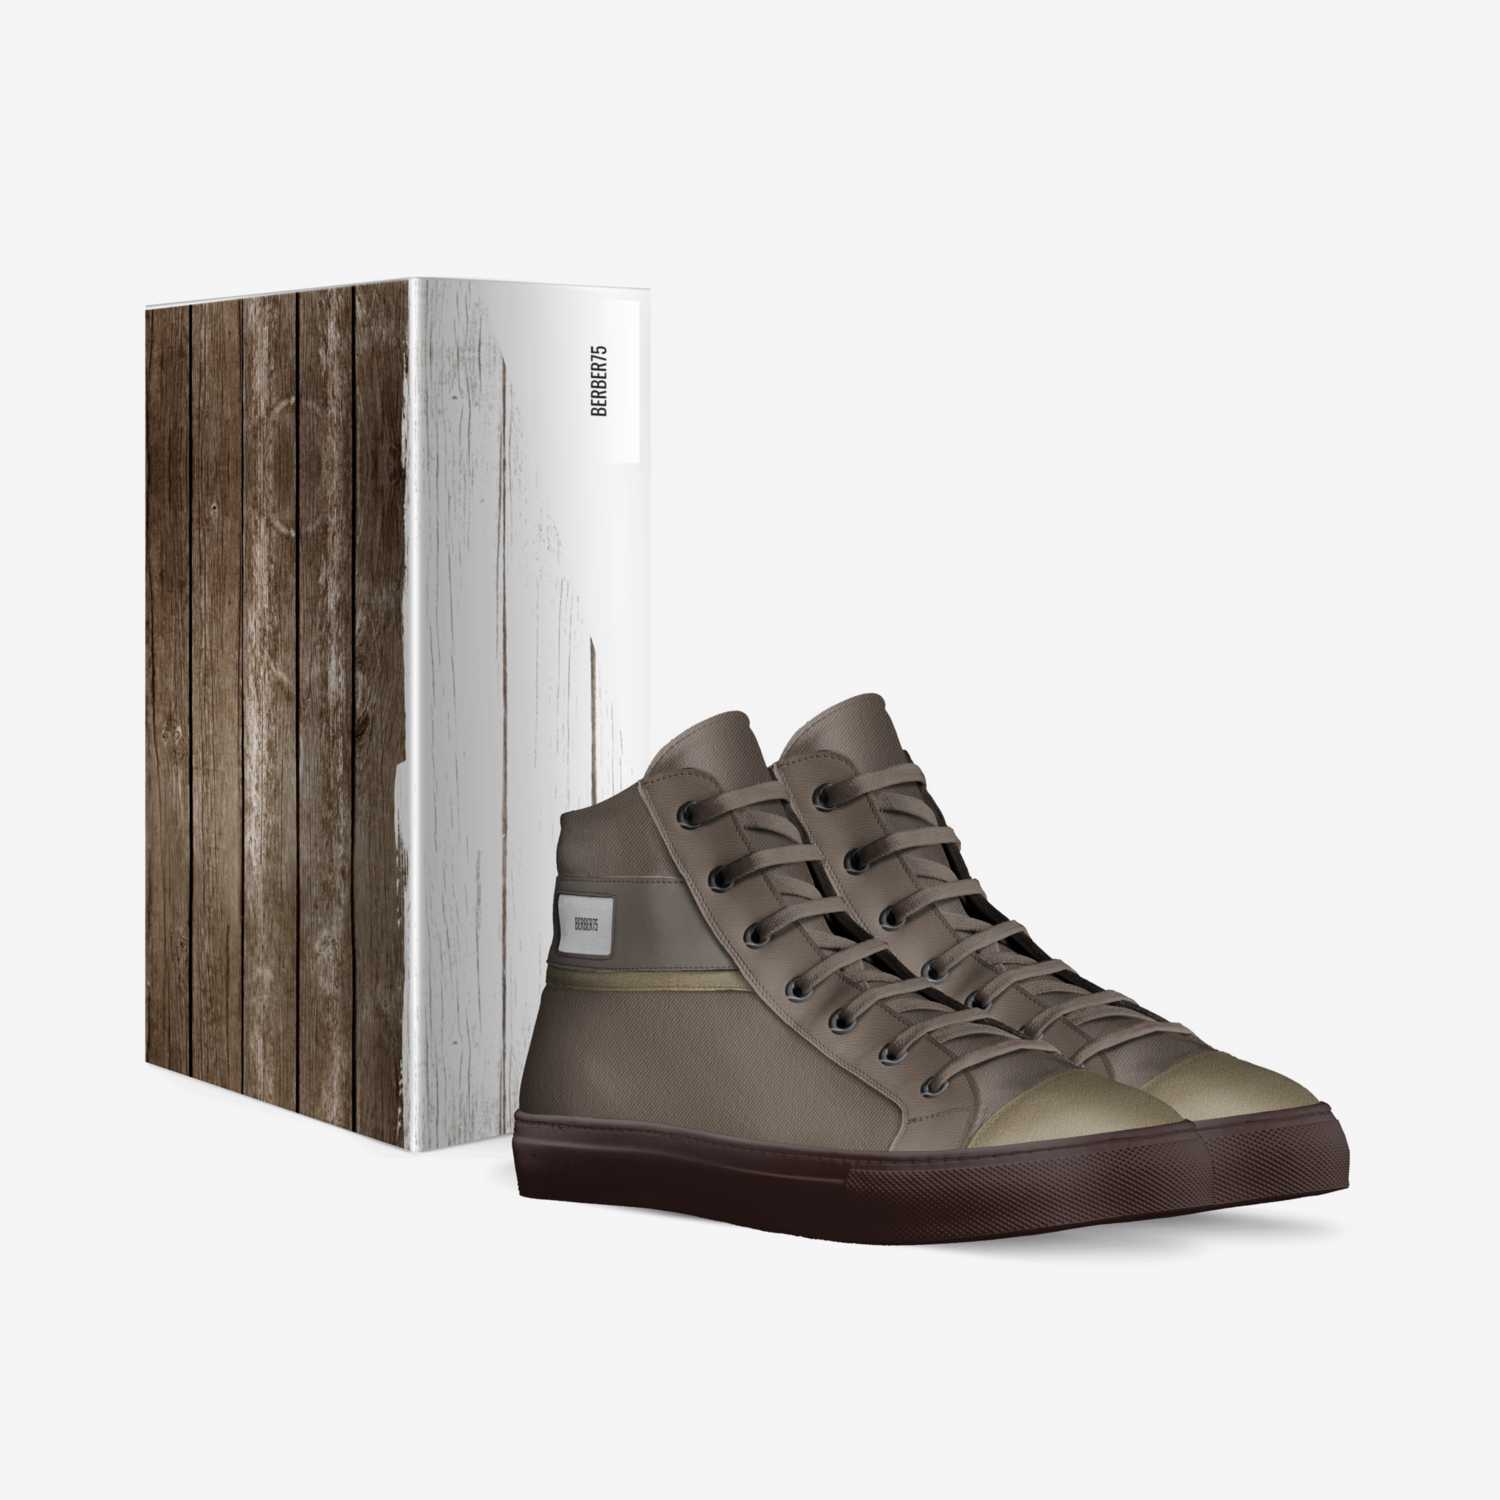 Berber75 custom made in Italy shoes by Dimitrios Bermper | Box view